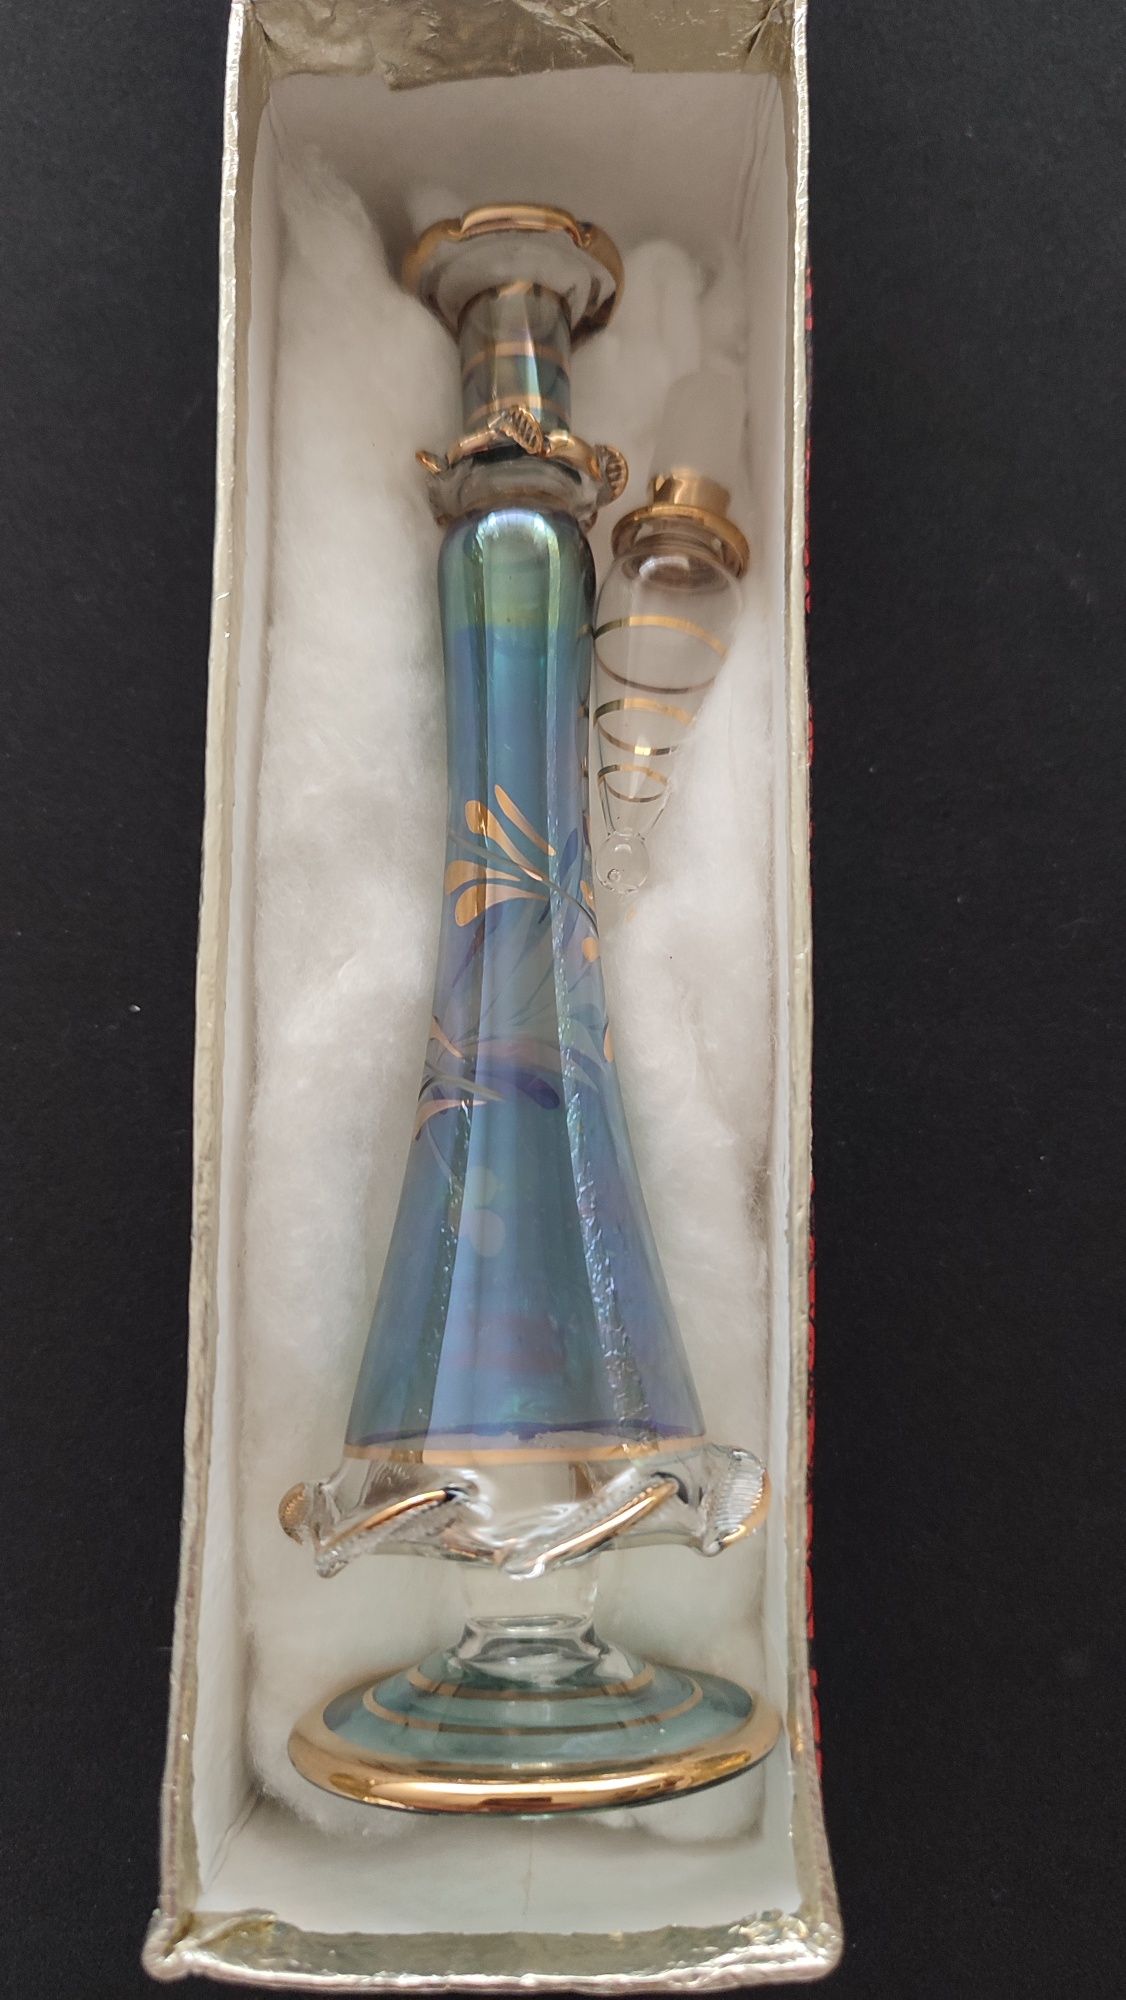 Frasco de perfume de vidro egípcio feito à mão